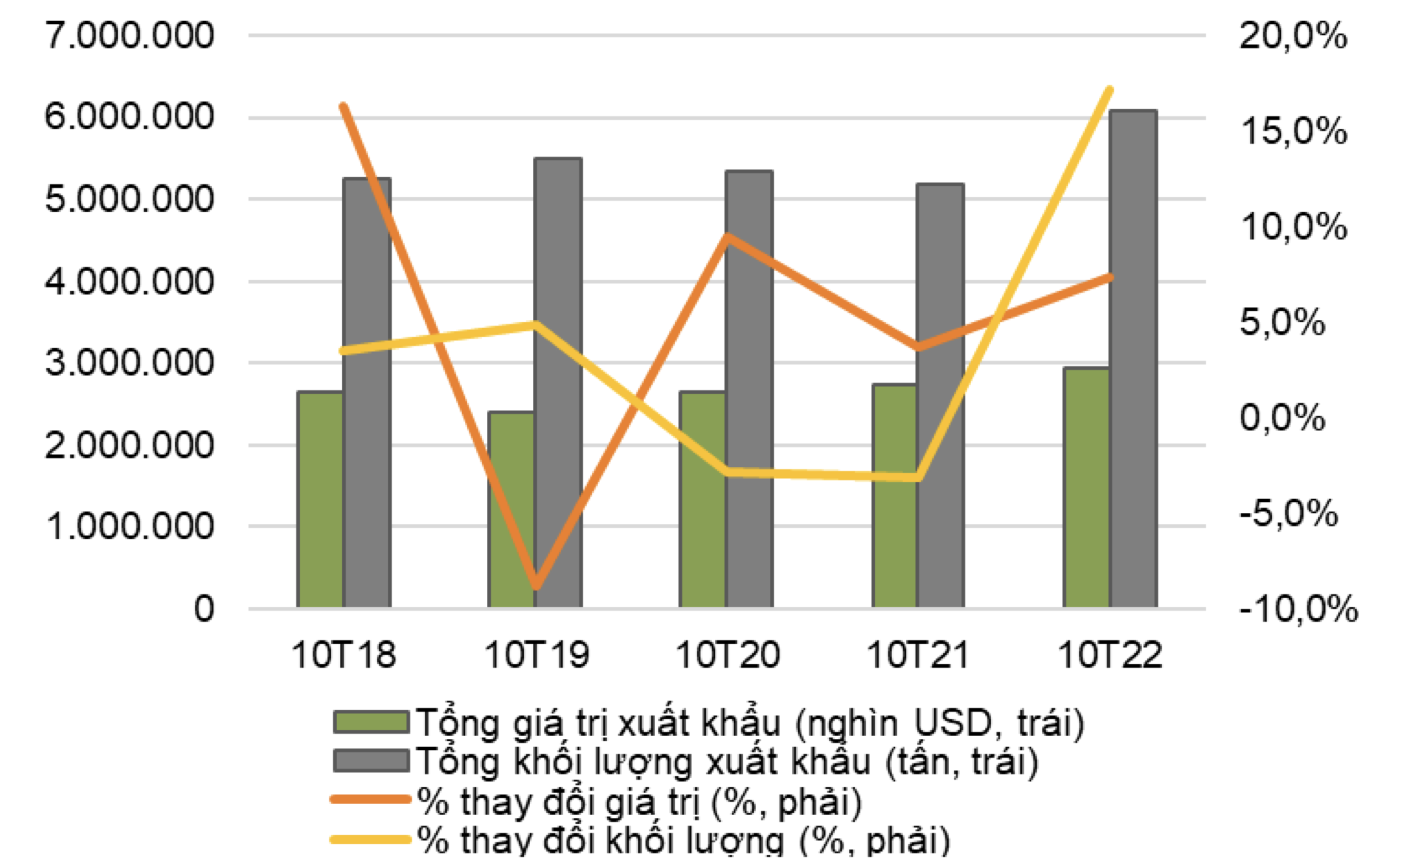 Giá trị xuất khẩu gạo của Việt Nam trong 10T22